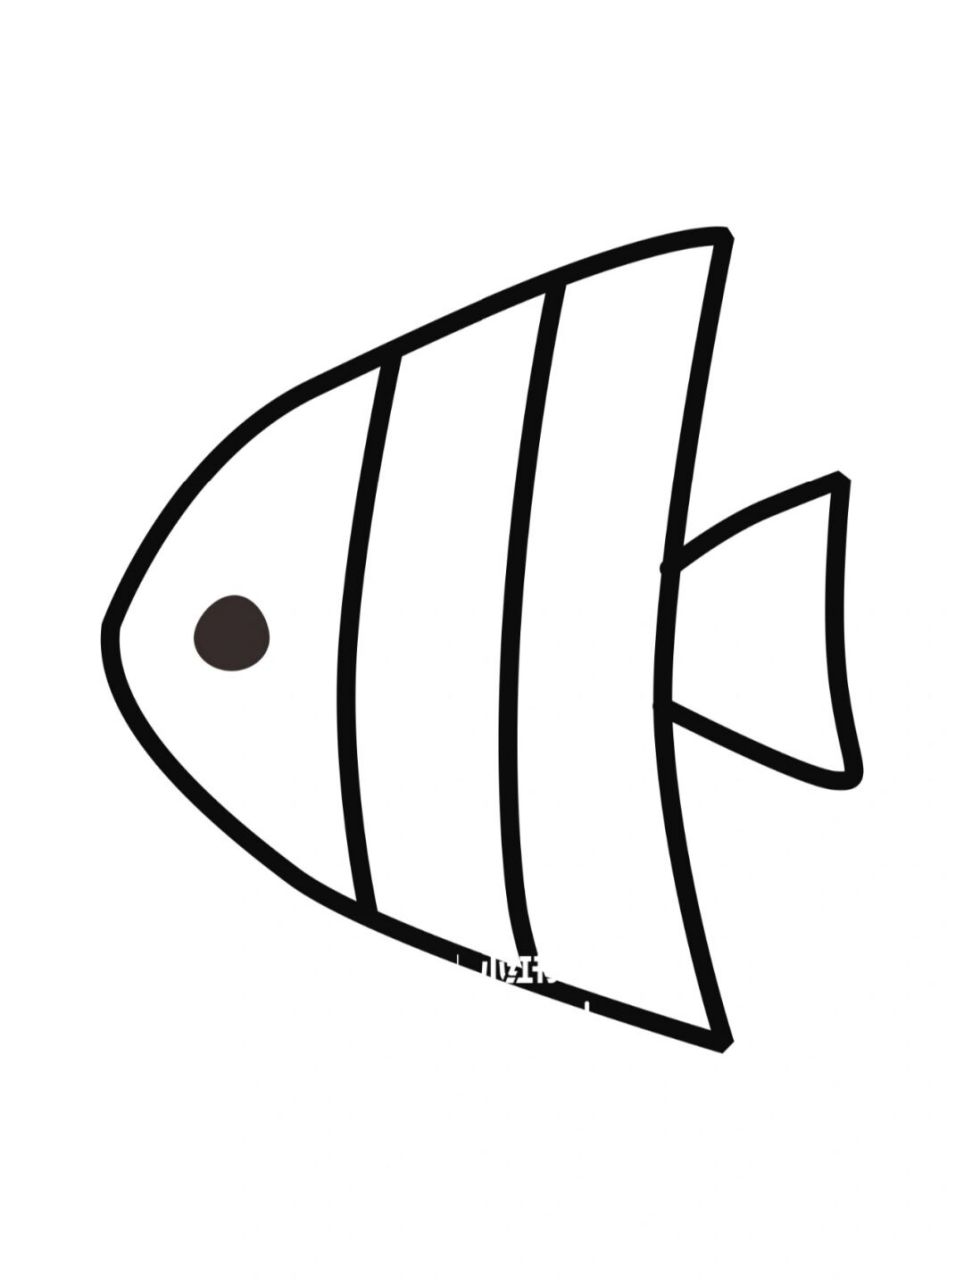 可爱的小鱼简笔画图片